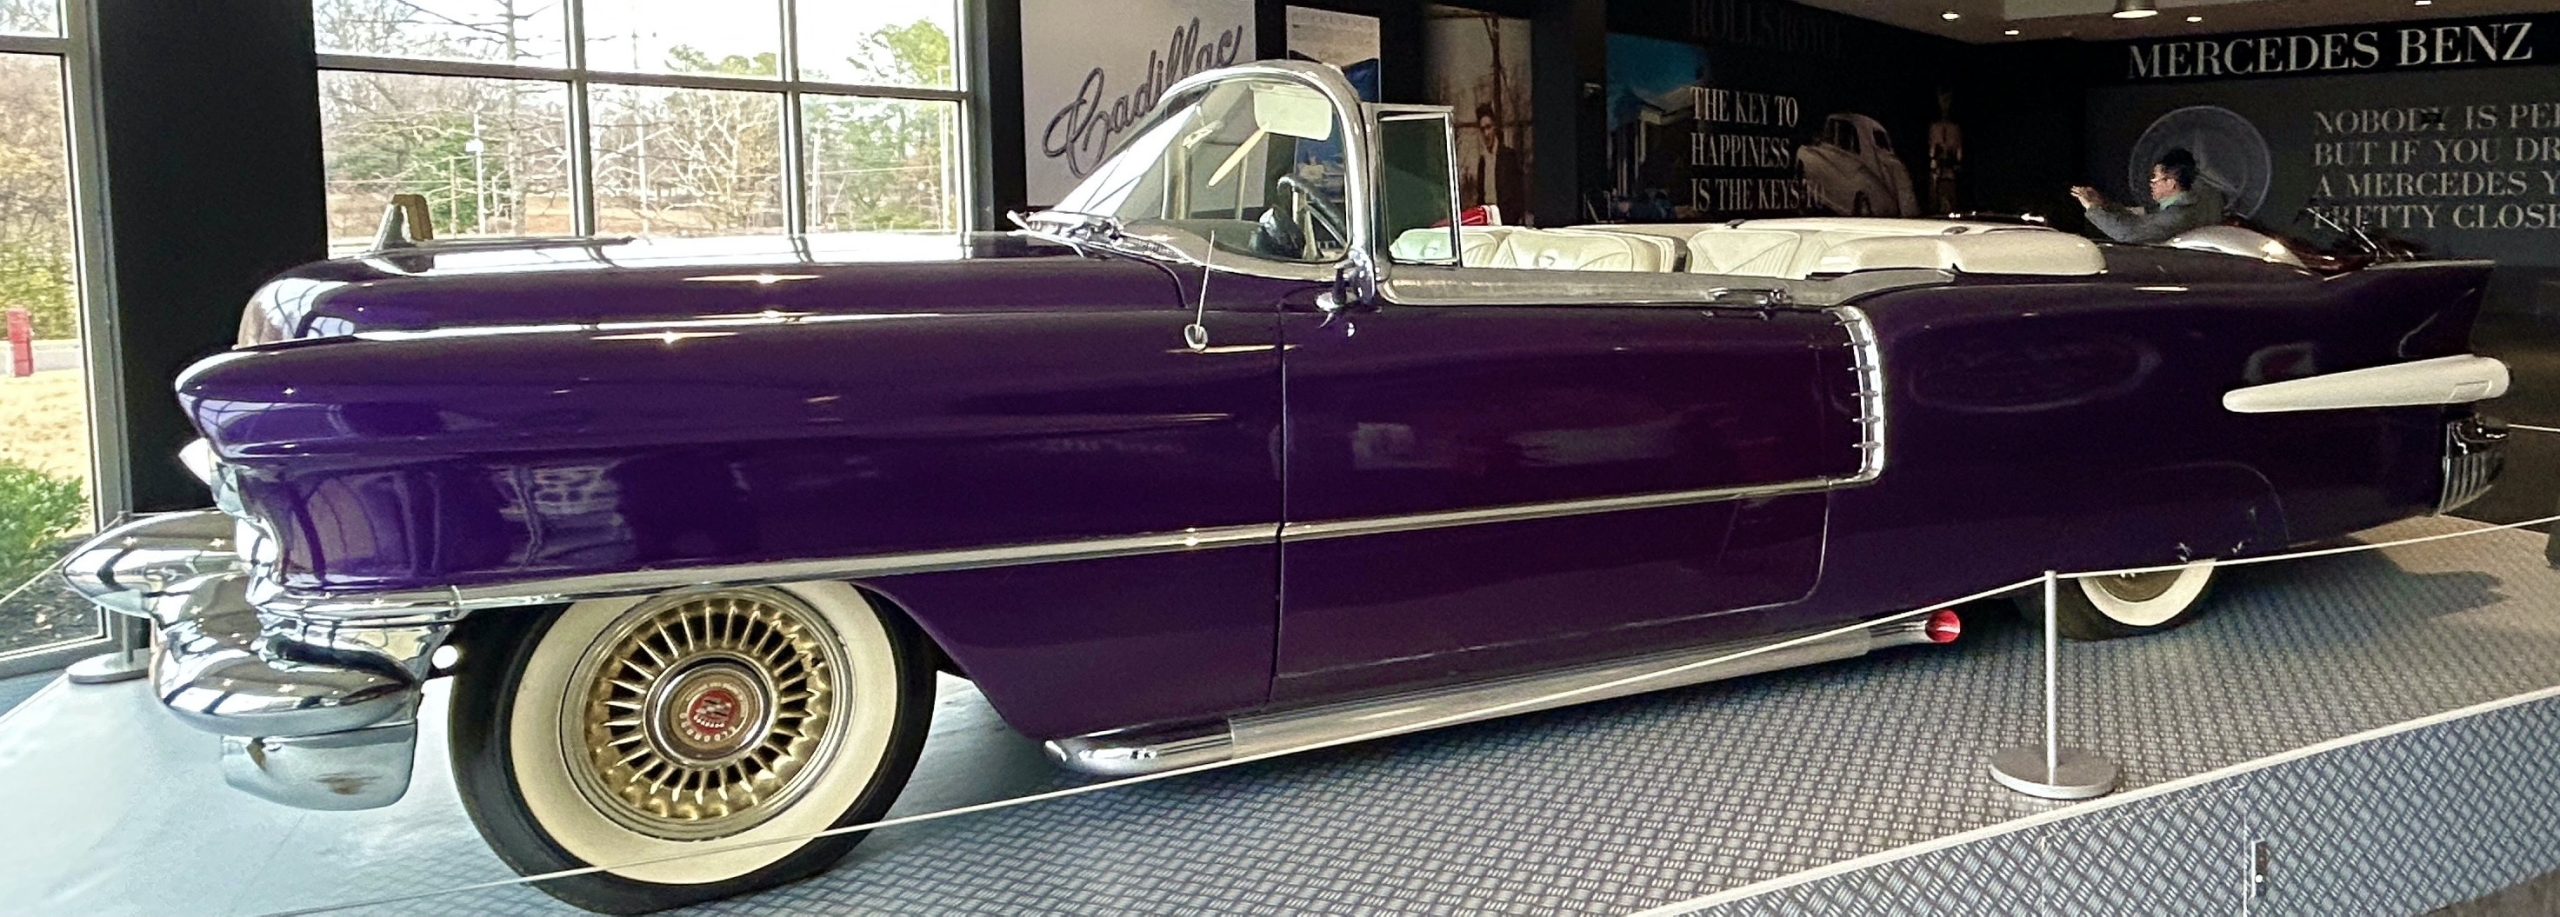 Vernon's Cadillac, Graceland